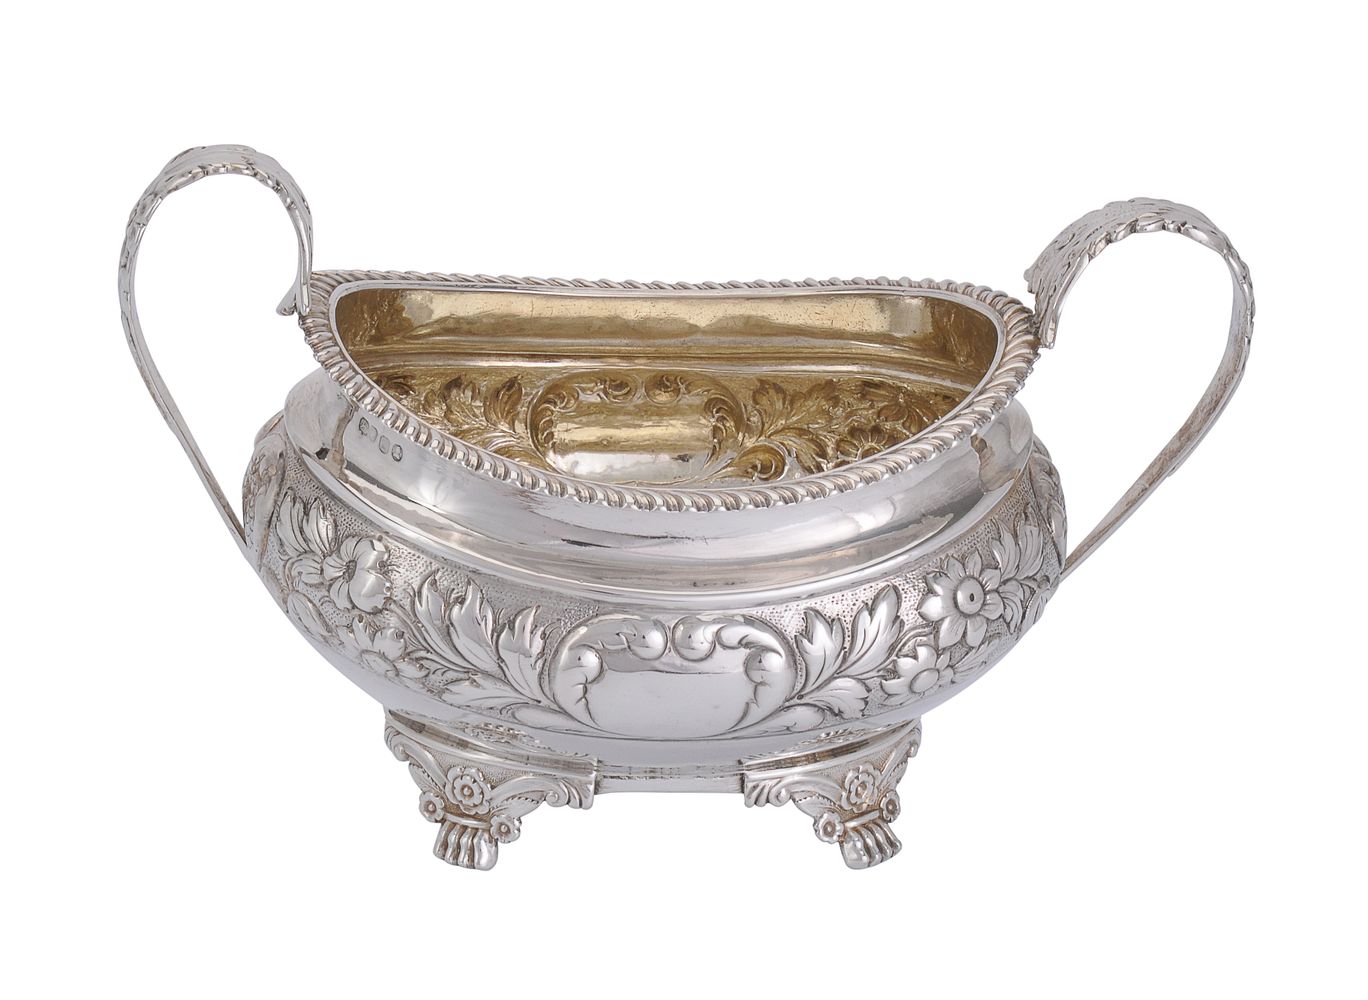 A George IV silver twin handled oval sugar basin